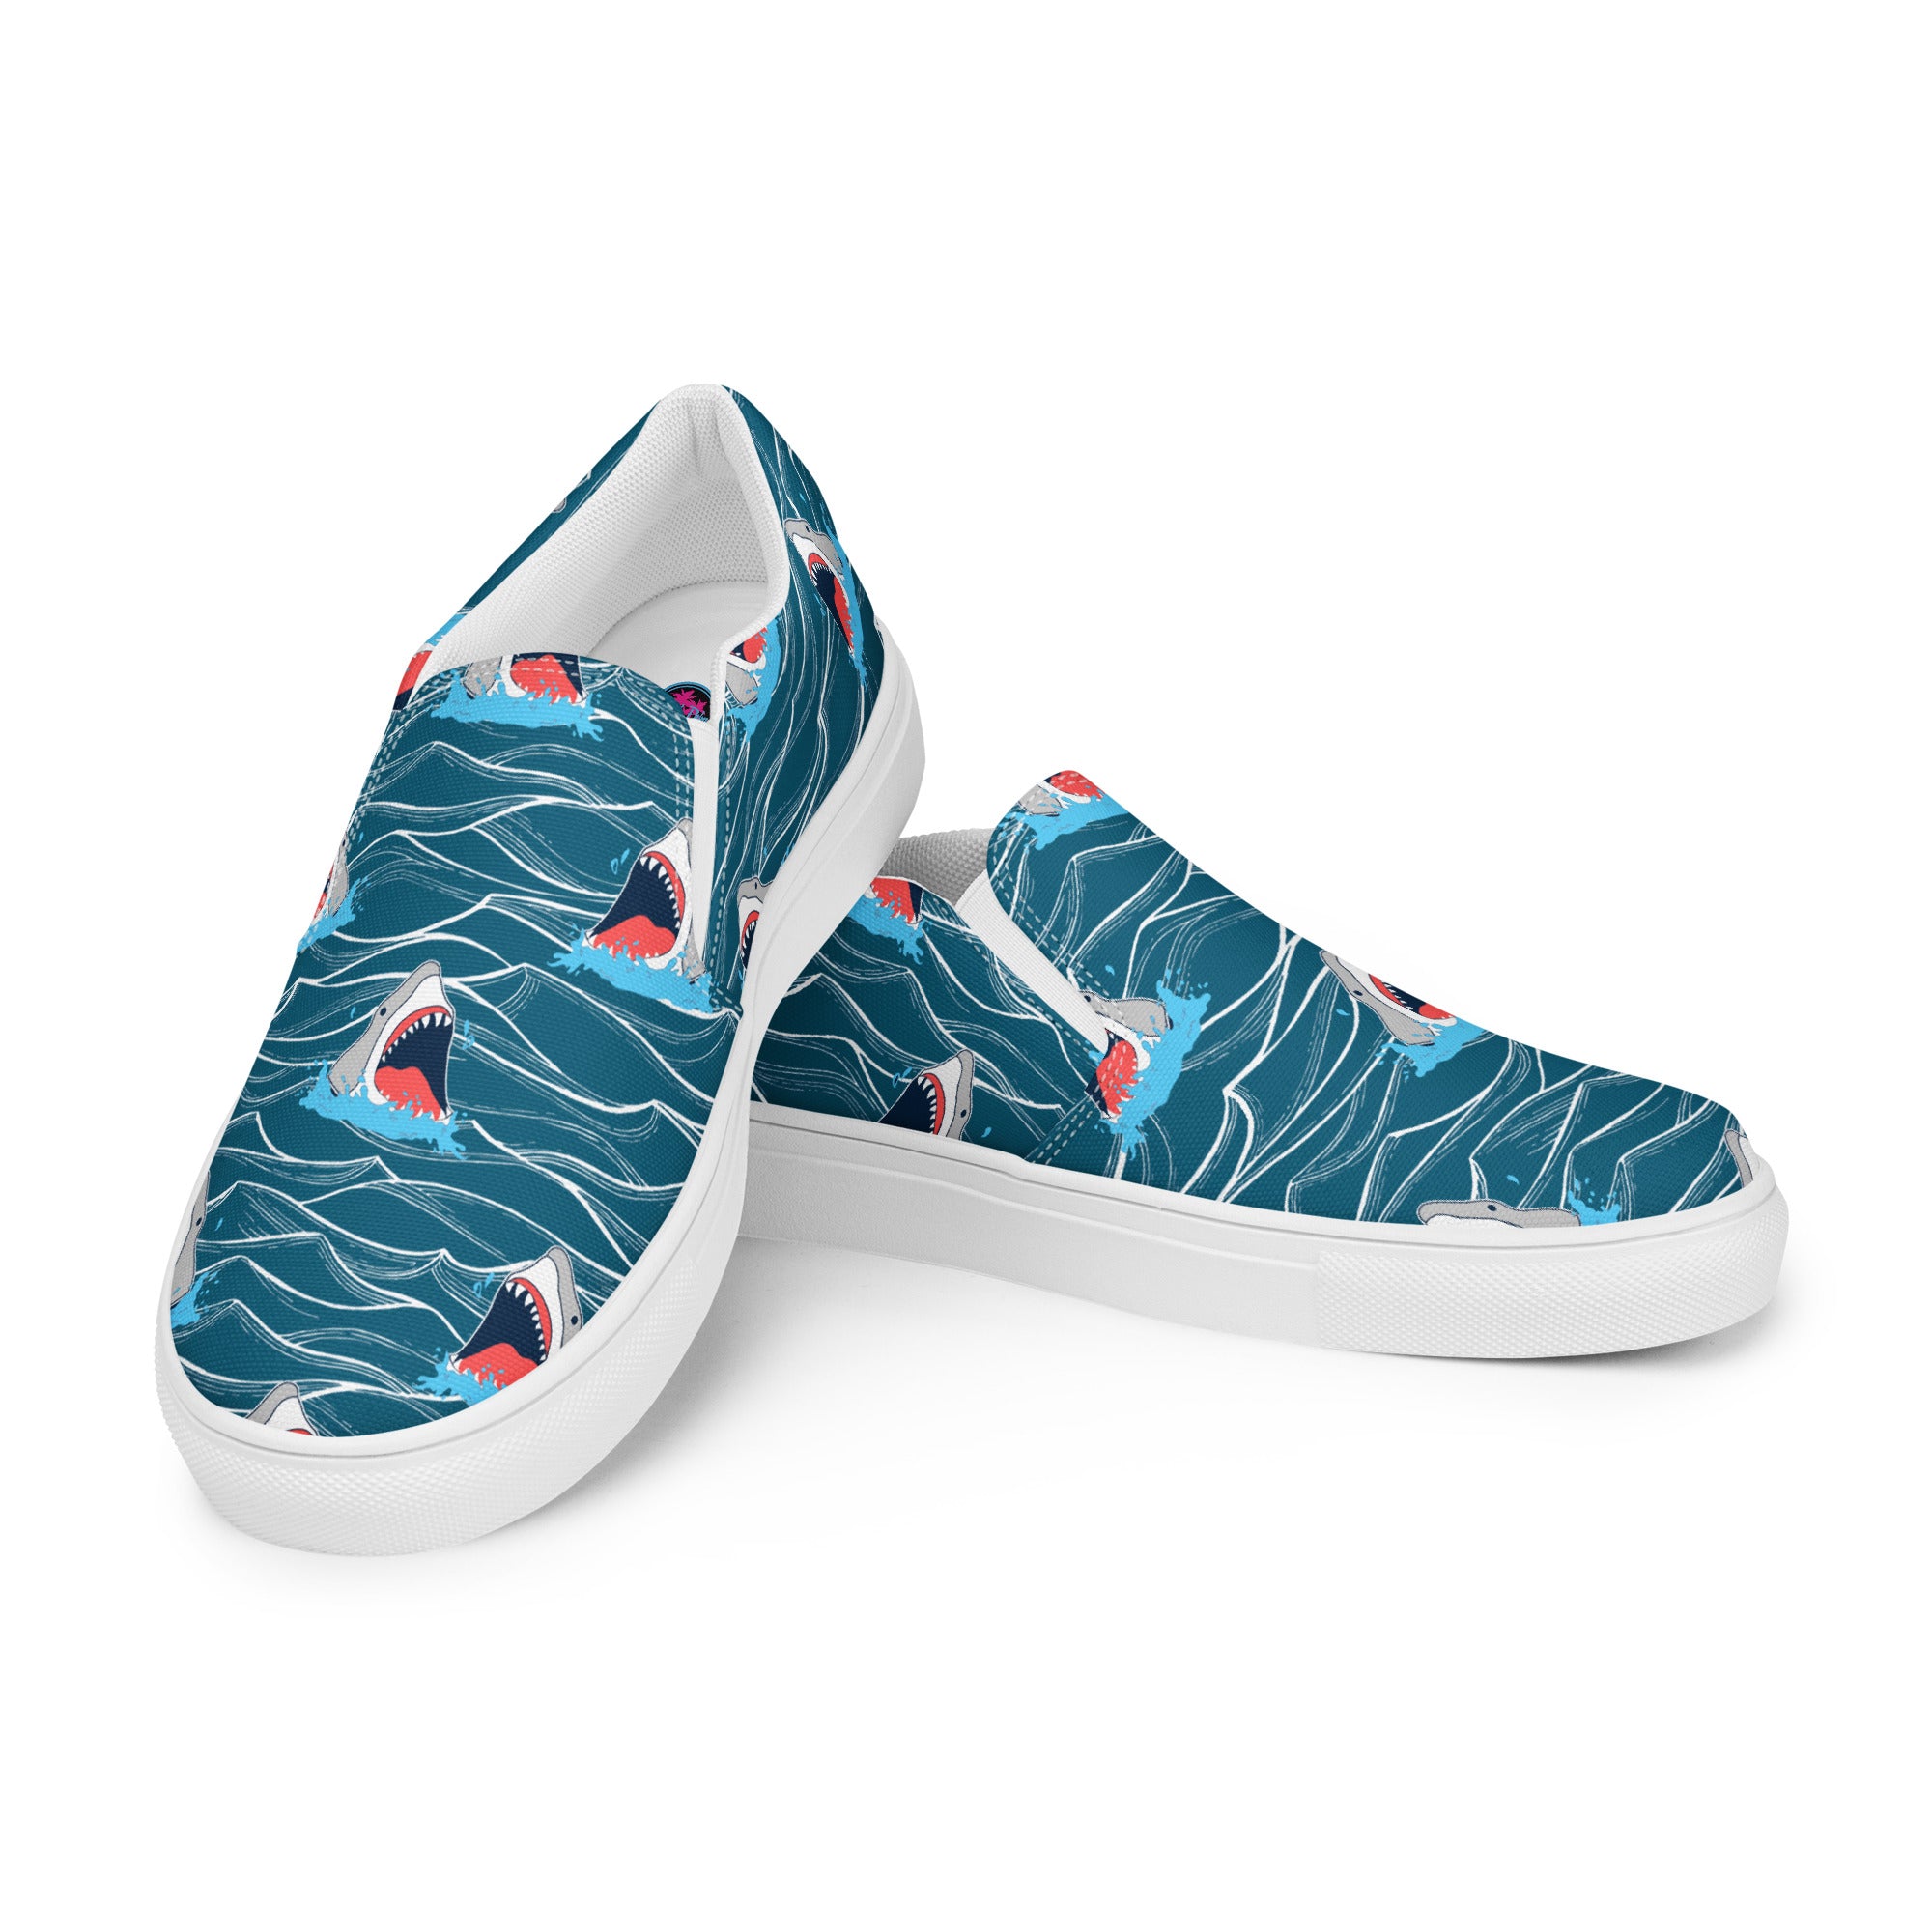 Rad Palm Shark Bait 2 Men’s Slip-On Canvas Shoes